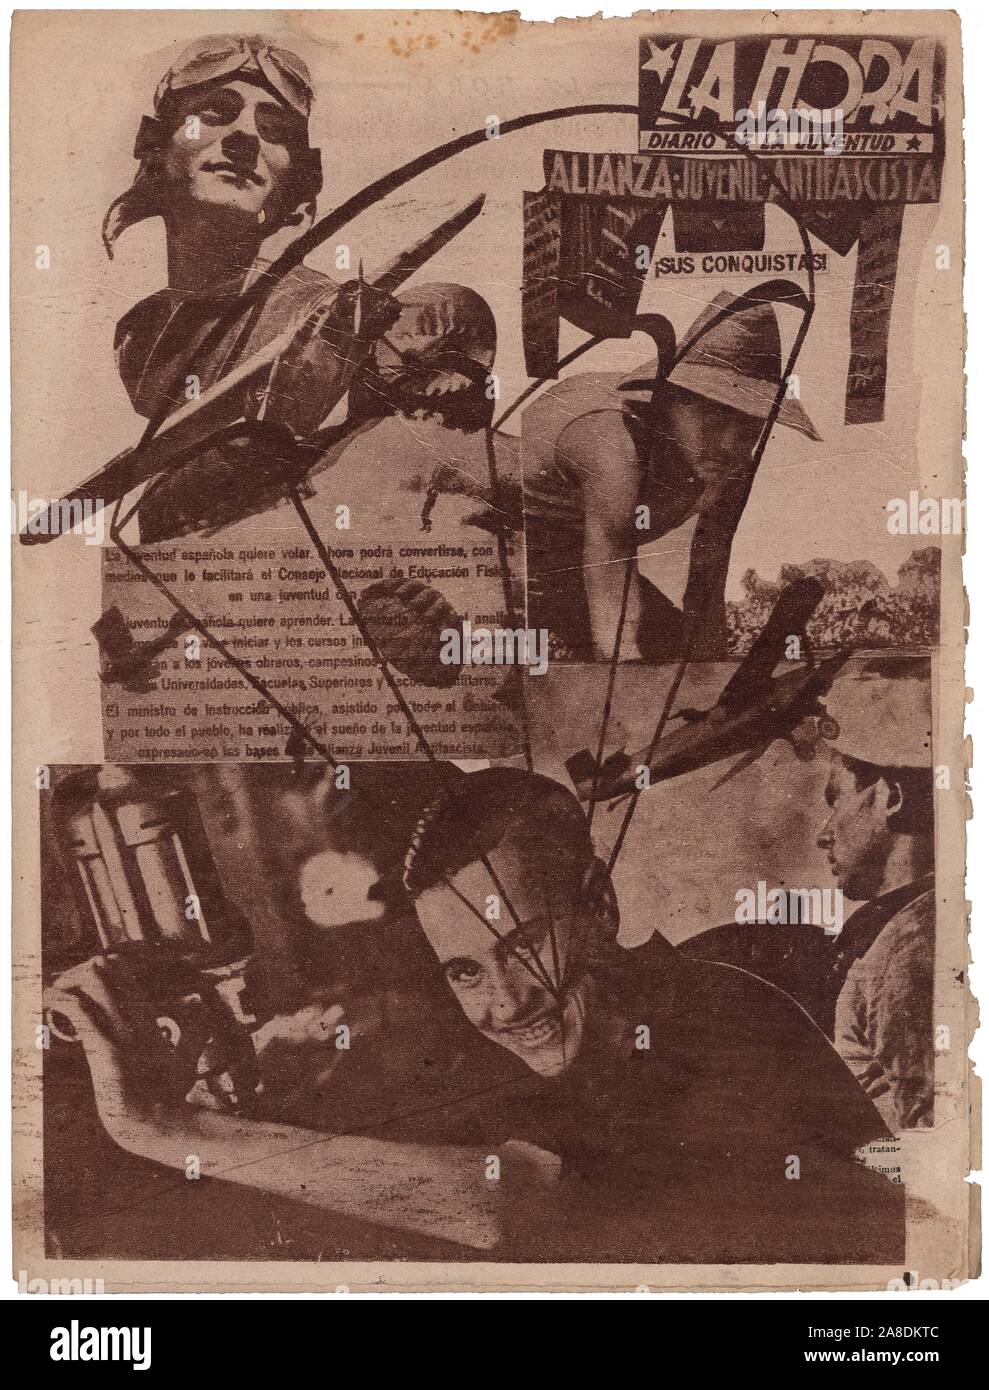 Portada de la revista de la juventud antifascista La Hora, editada en Valencia, septiembre de 1937. Stock Photo